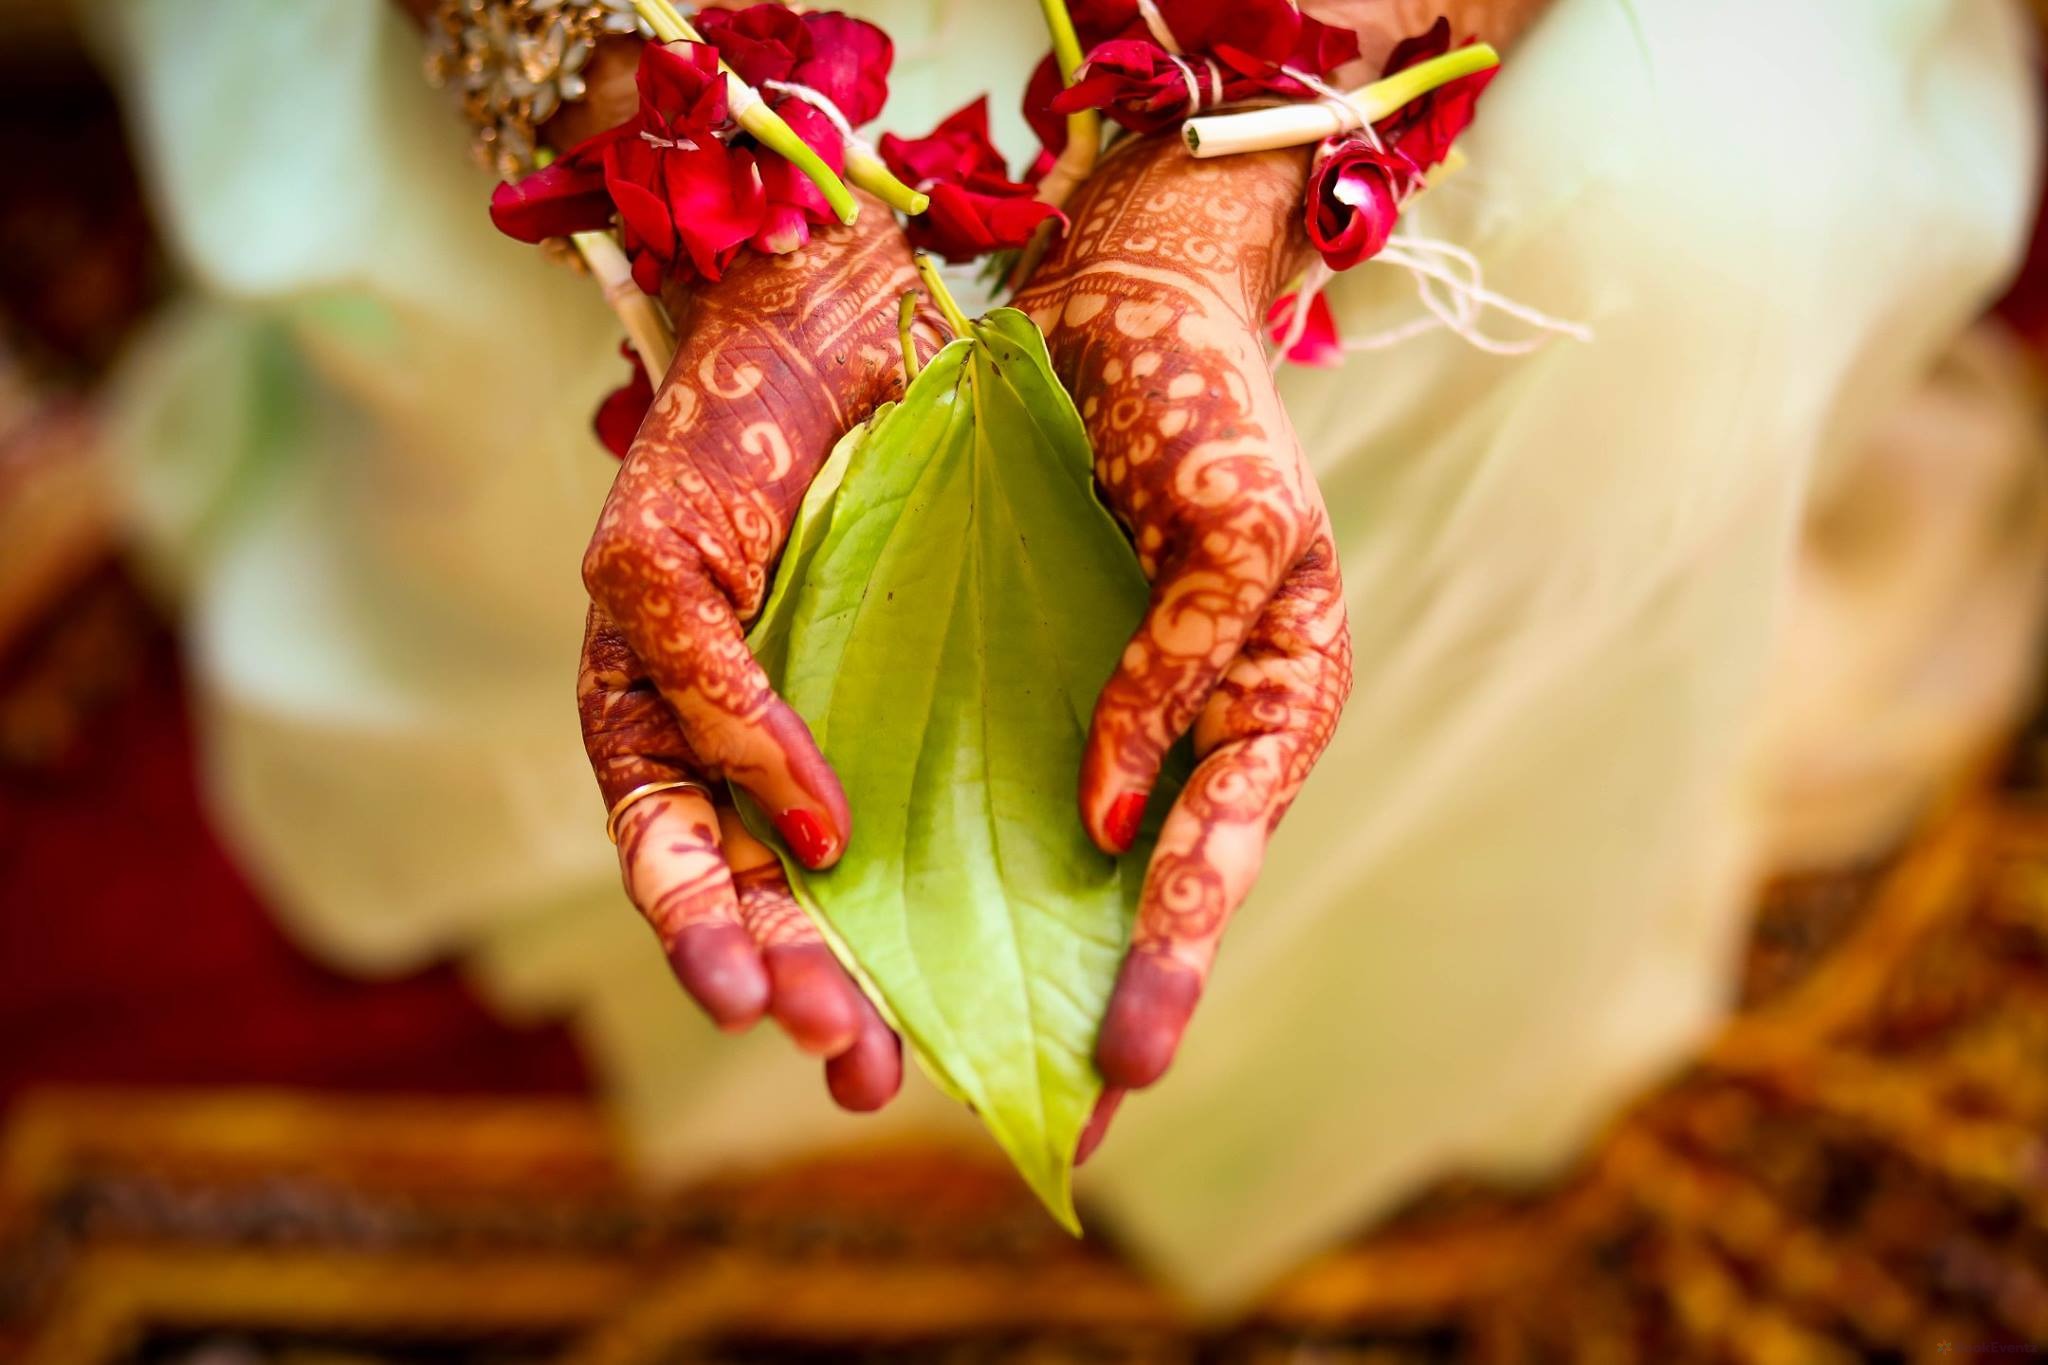 Kartik Patani Wedding Photographer, Mumbai